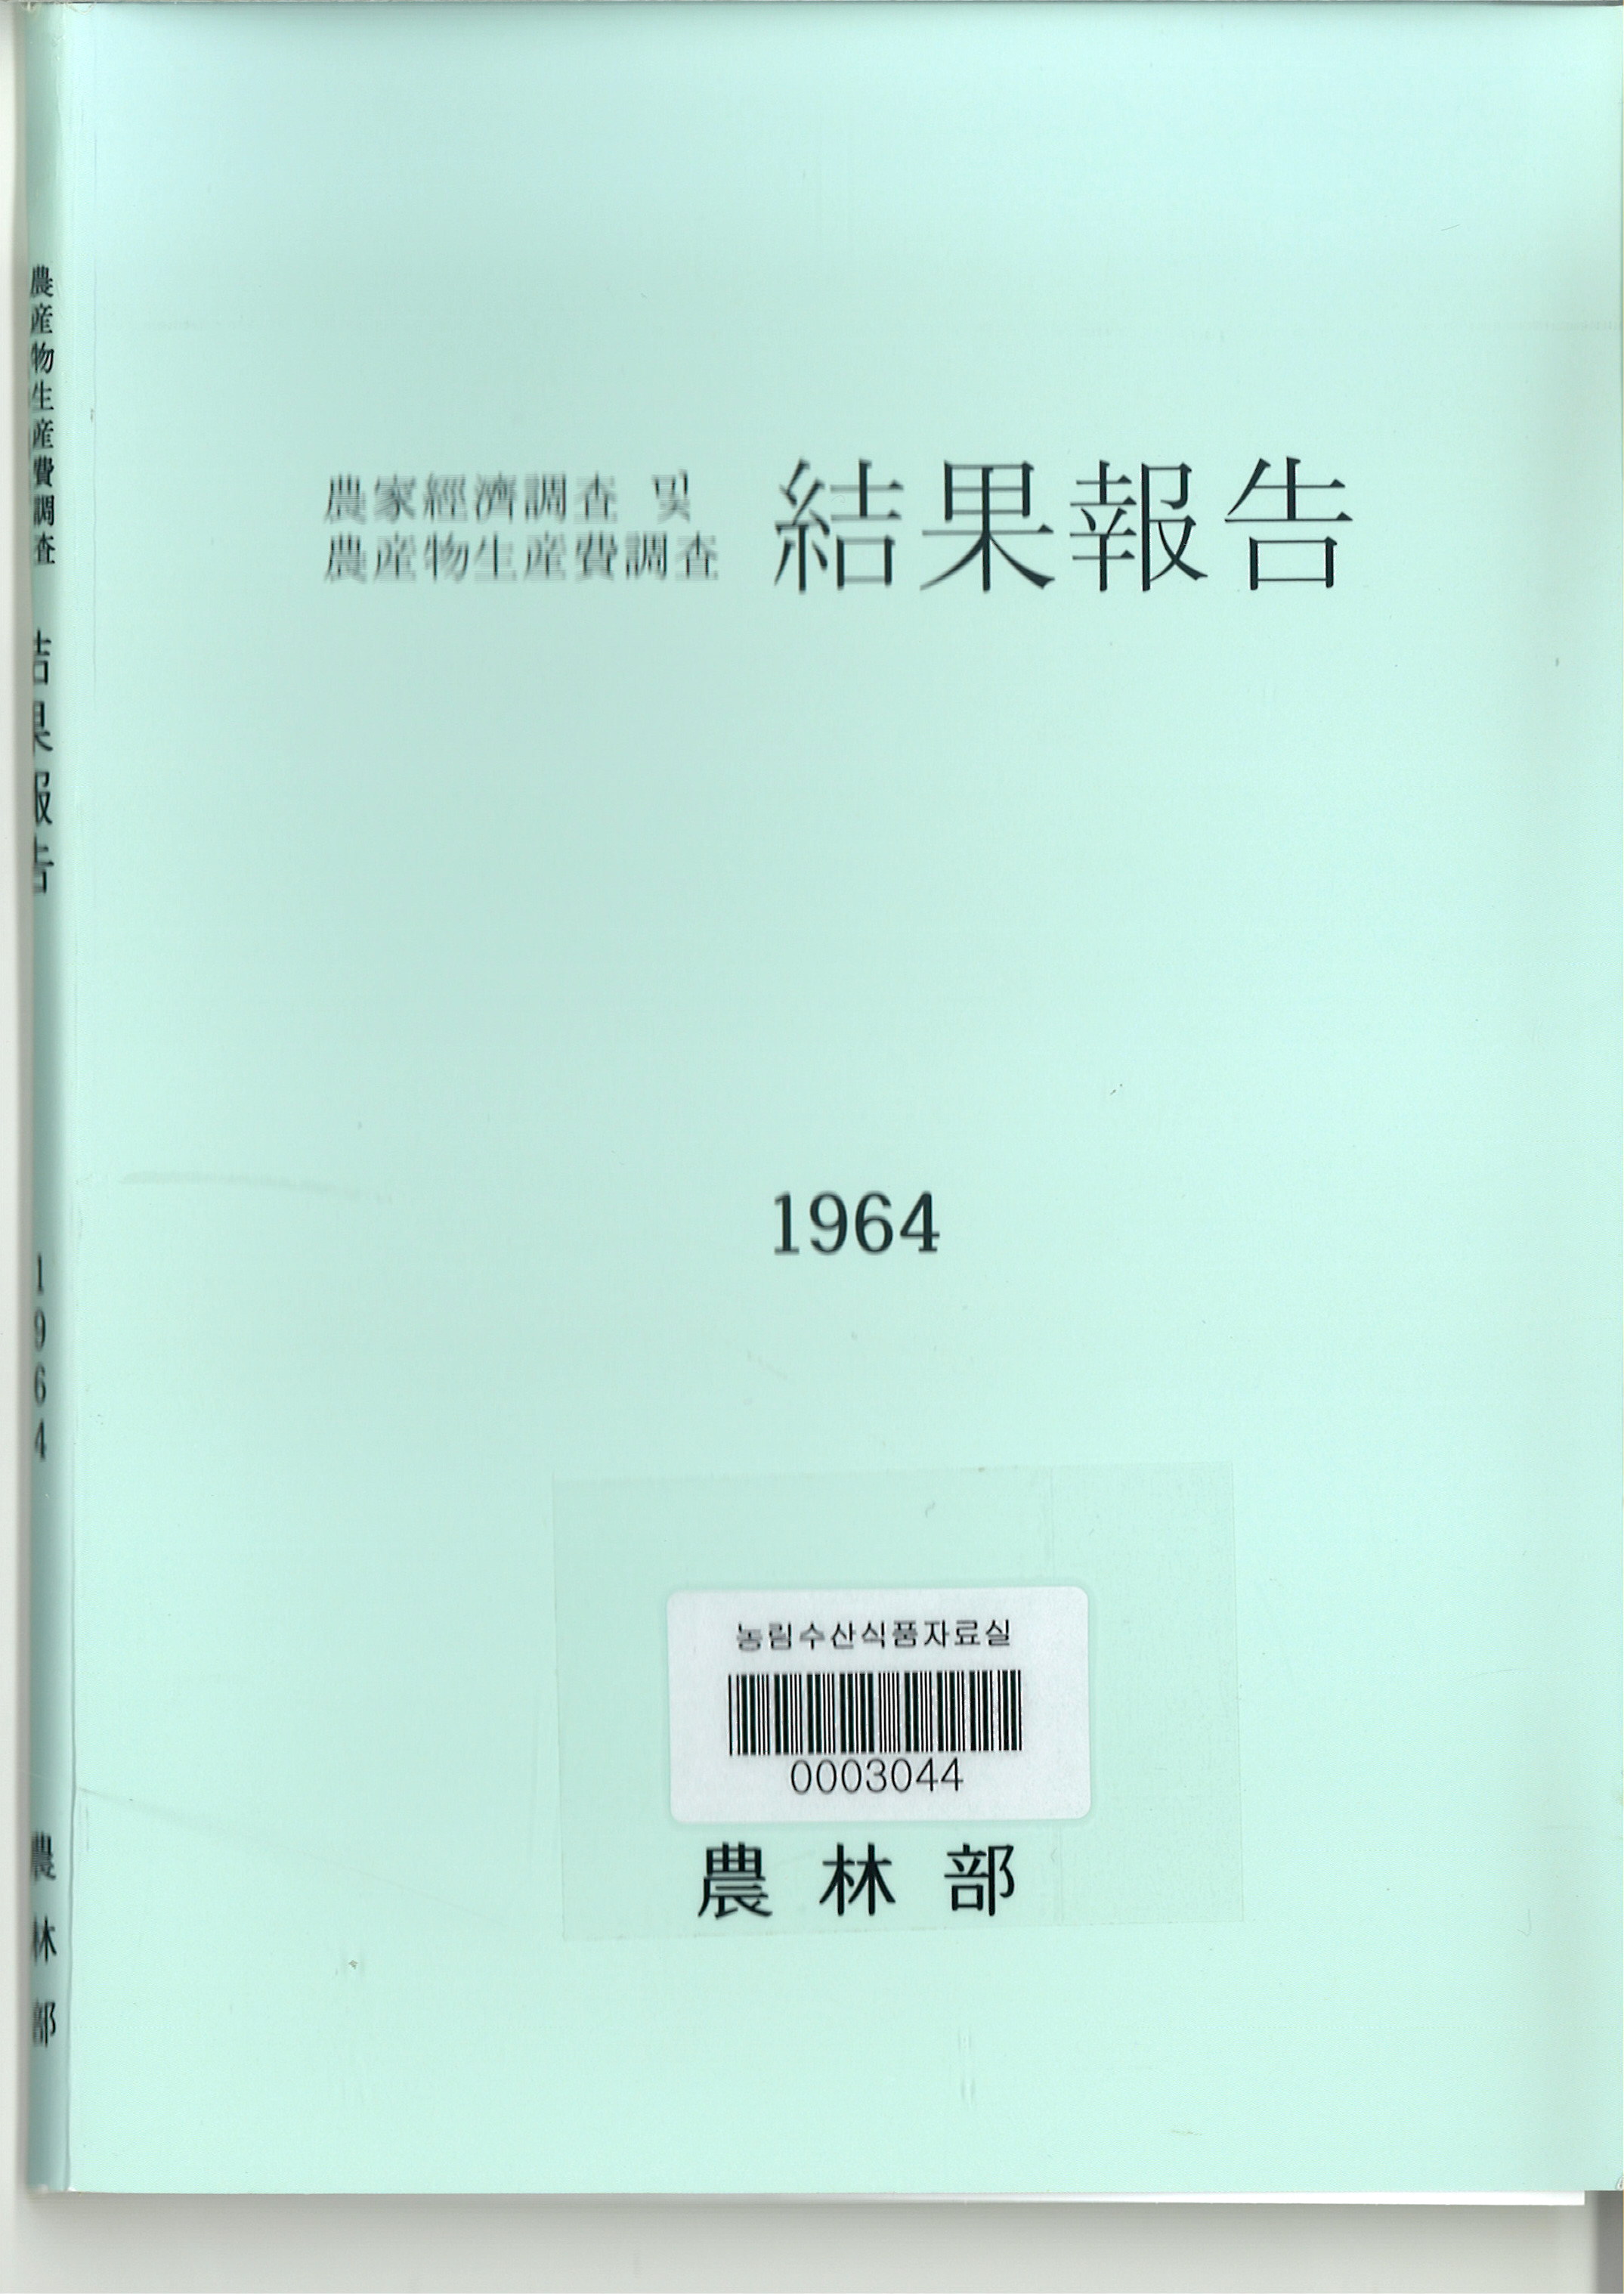 농가경제조사 및 농산물생산비조사 결과보고 / 농림부 [편]. 1964